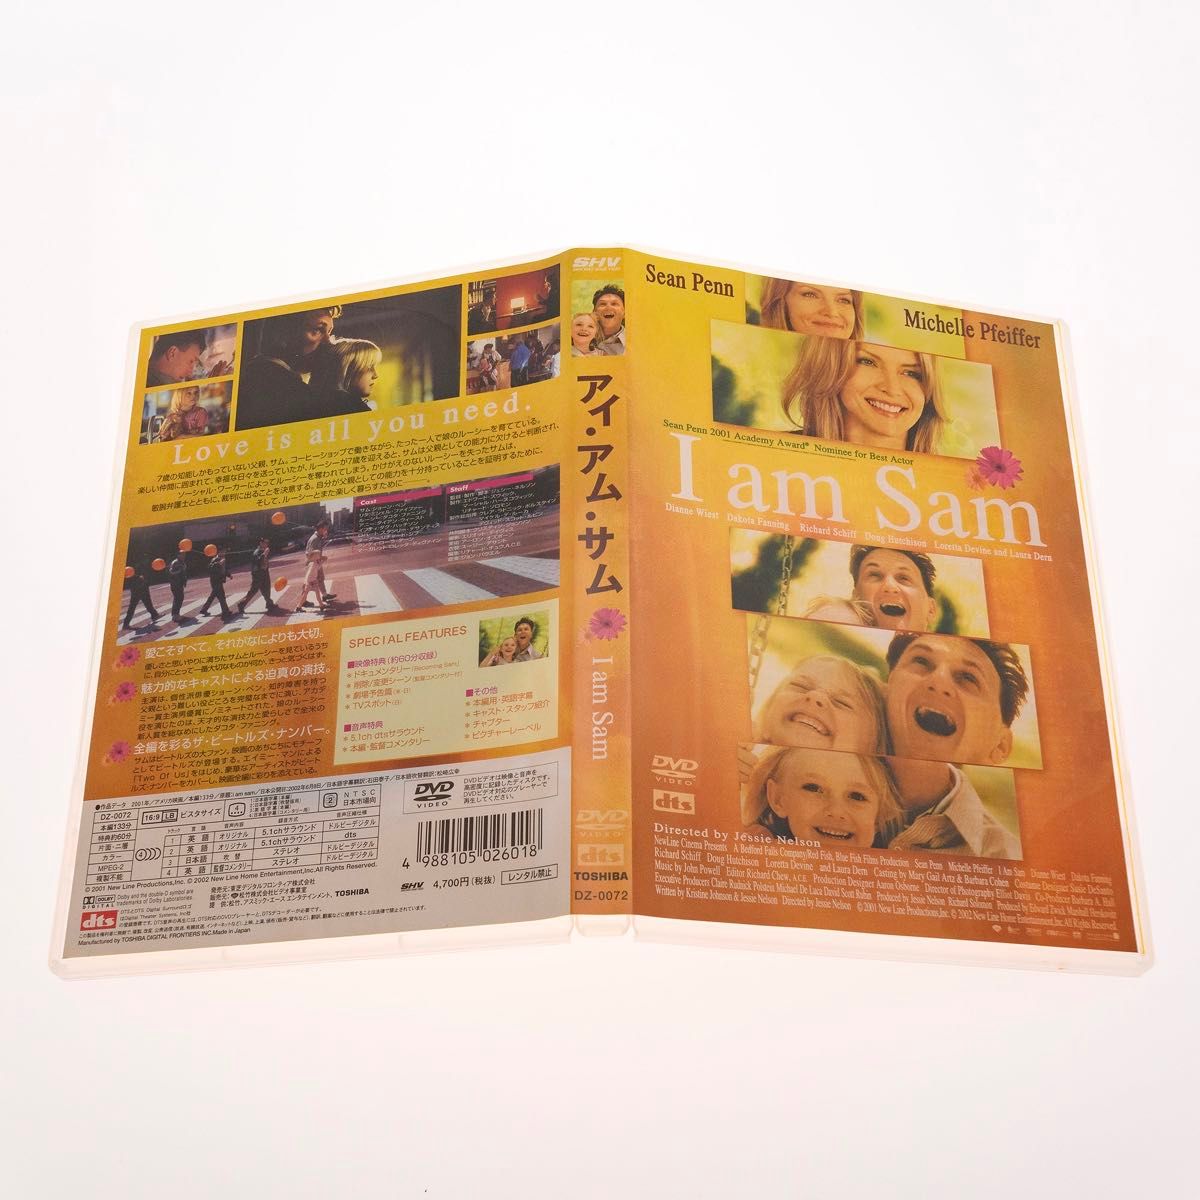 【DVD】I am Sam 初回限定生産 フォトブックレット封入 ショーン・ペン ミシェル・ファイファー DZ-0072